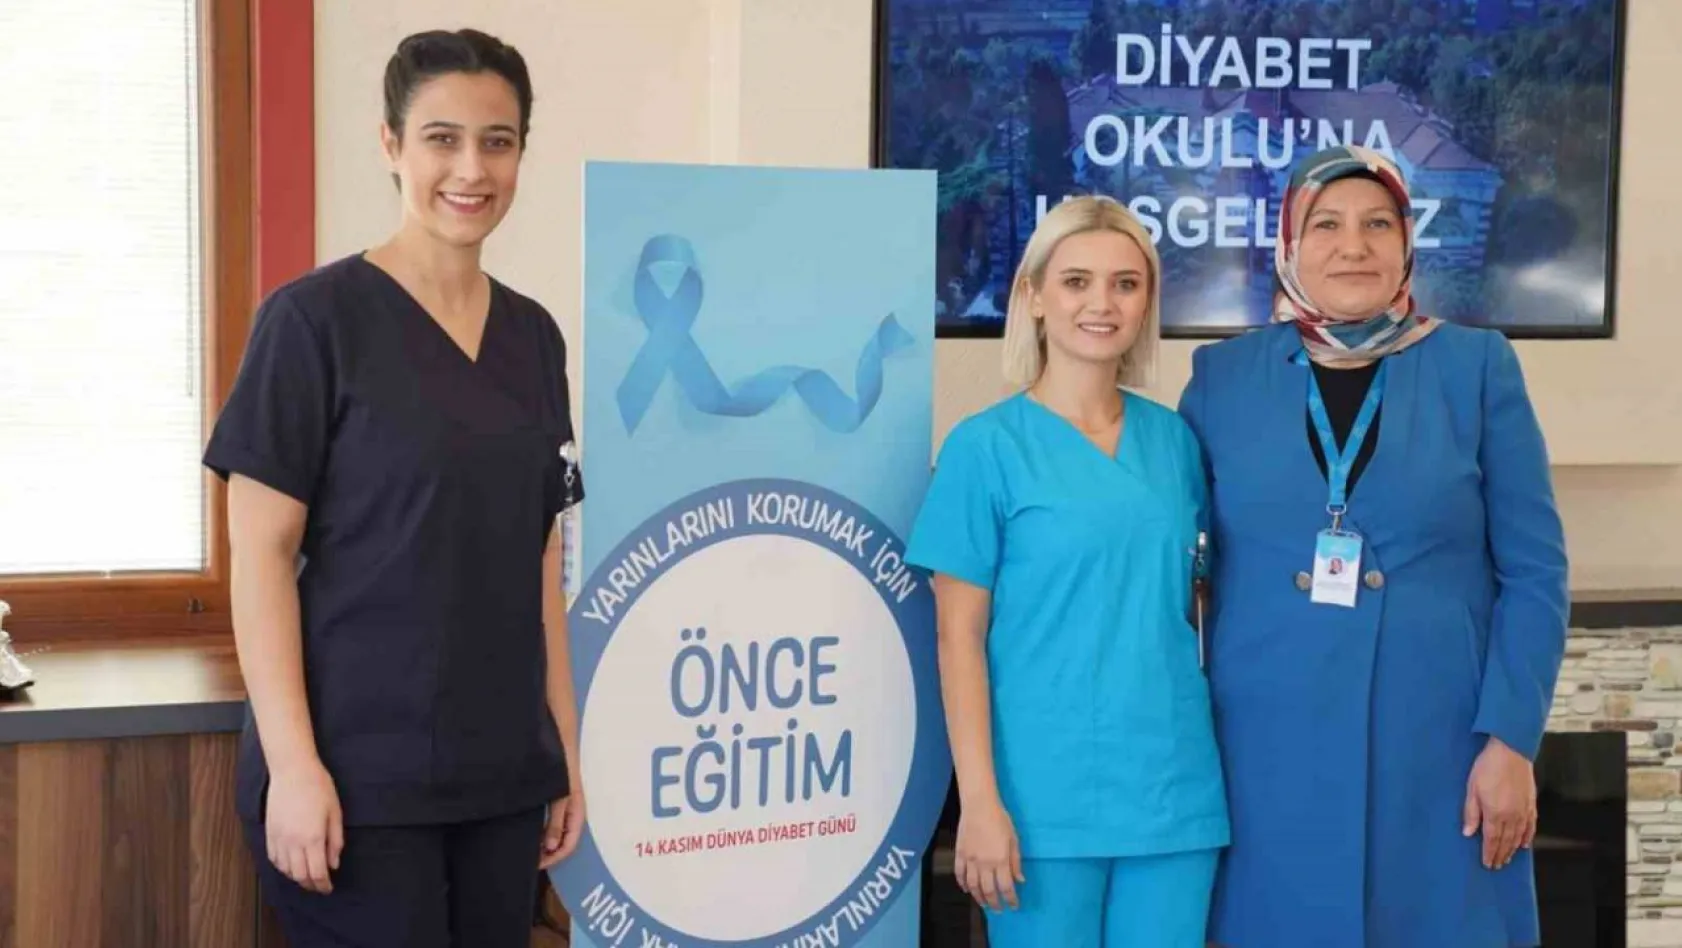 Türkiye Hastanesi, Diyabet Eğitimiyle yarını koruma vizyonunu taşıyor